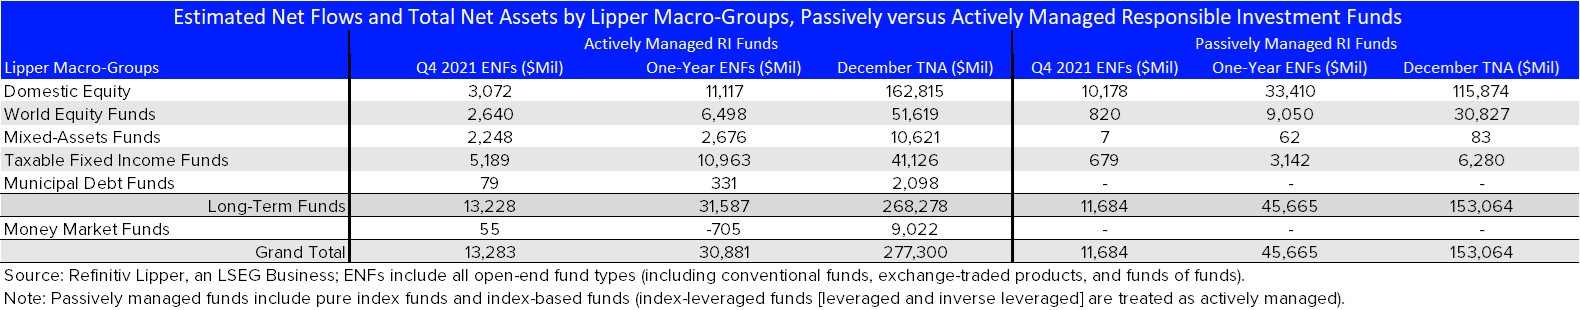 ENFS & TNAs-Act vs Pass Macro Groups RI Funds Q4-21